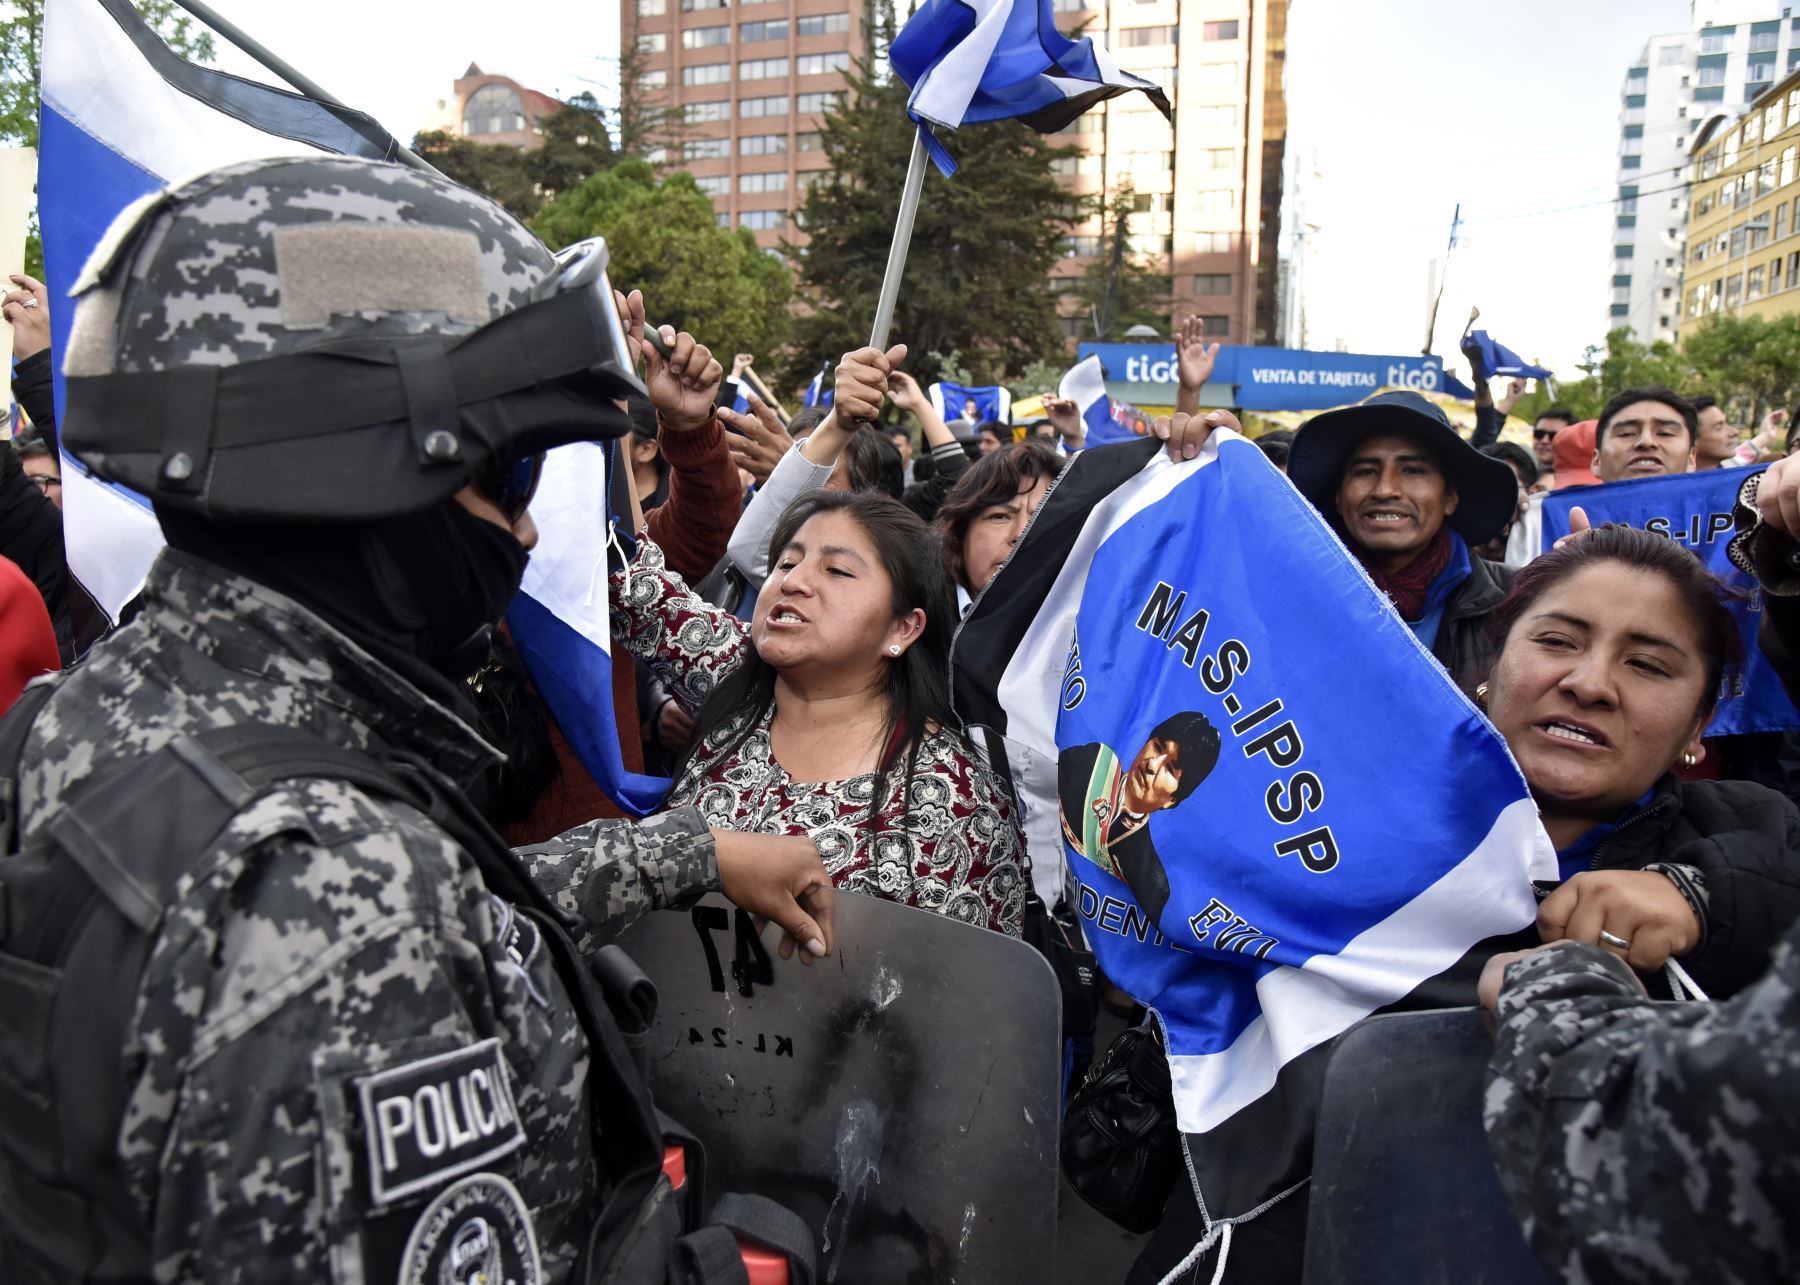 En esta imagen de archivo tomada el 21 de octubre de 2019, los partidarios del presidente y candidato de Bolivia, Evo Morales, están siendo contenidos por las fuerzas de seguridad mientras gritan consignas contra los partidarios del candidato Carlos Mesa. Foto: AFP